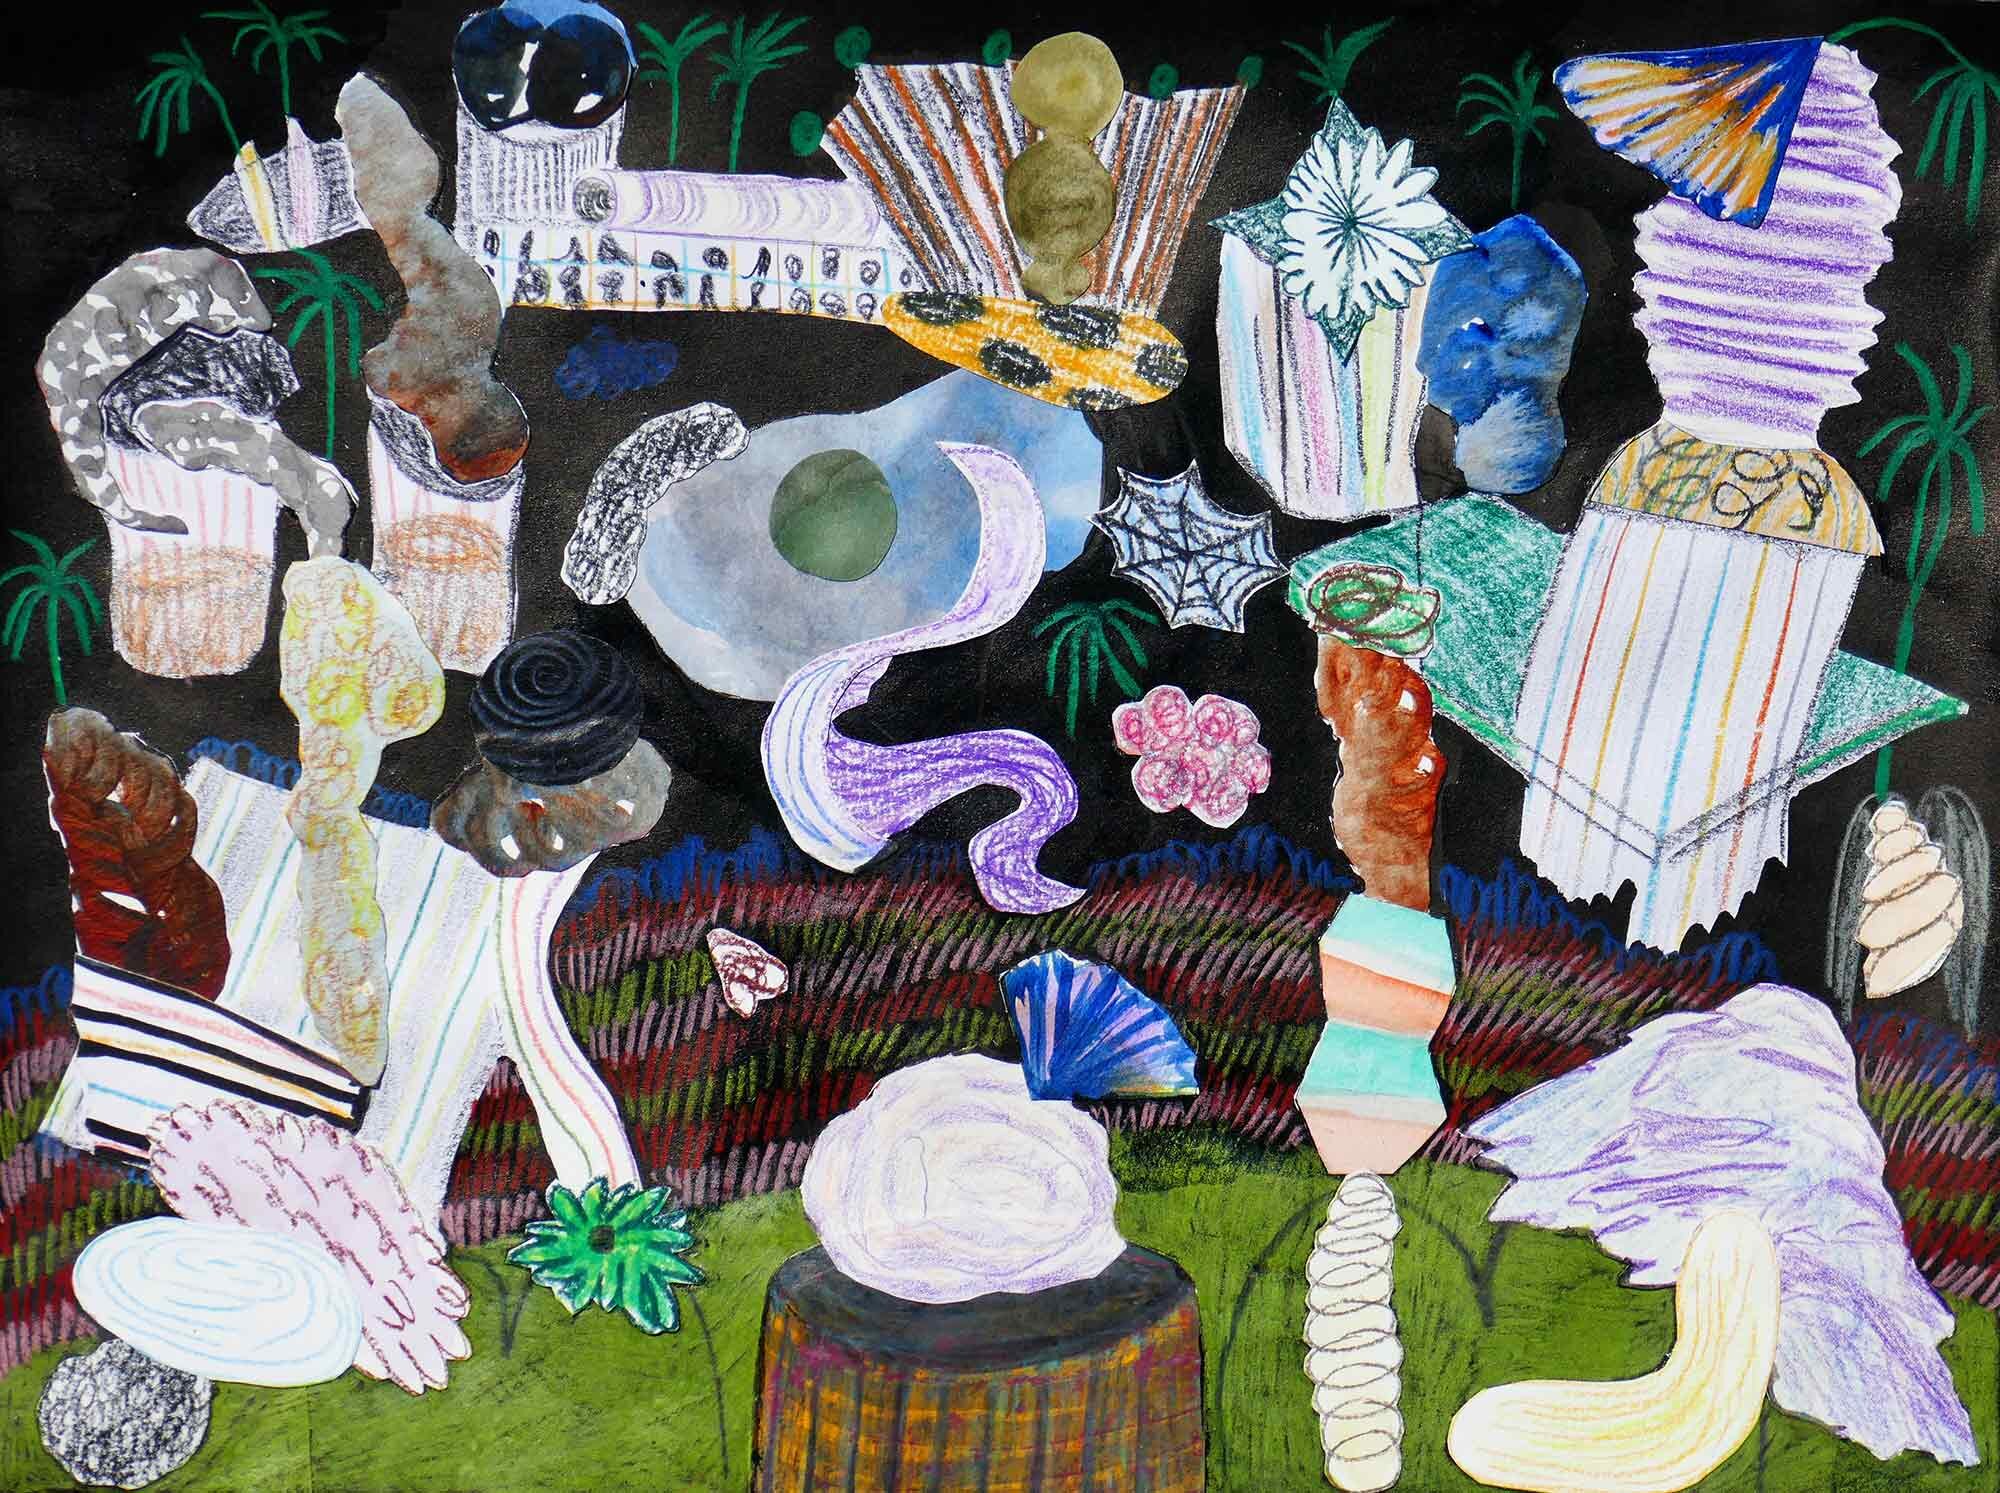   Restjes  ( Leftovers ) collage; inkt, acryl, potlood, aquarel 24 x 32 cm, 2020  